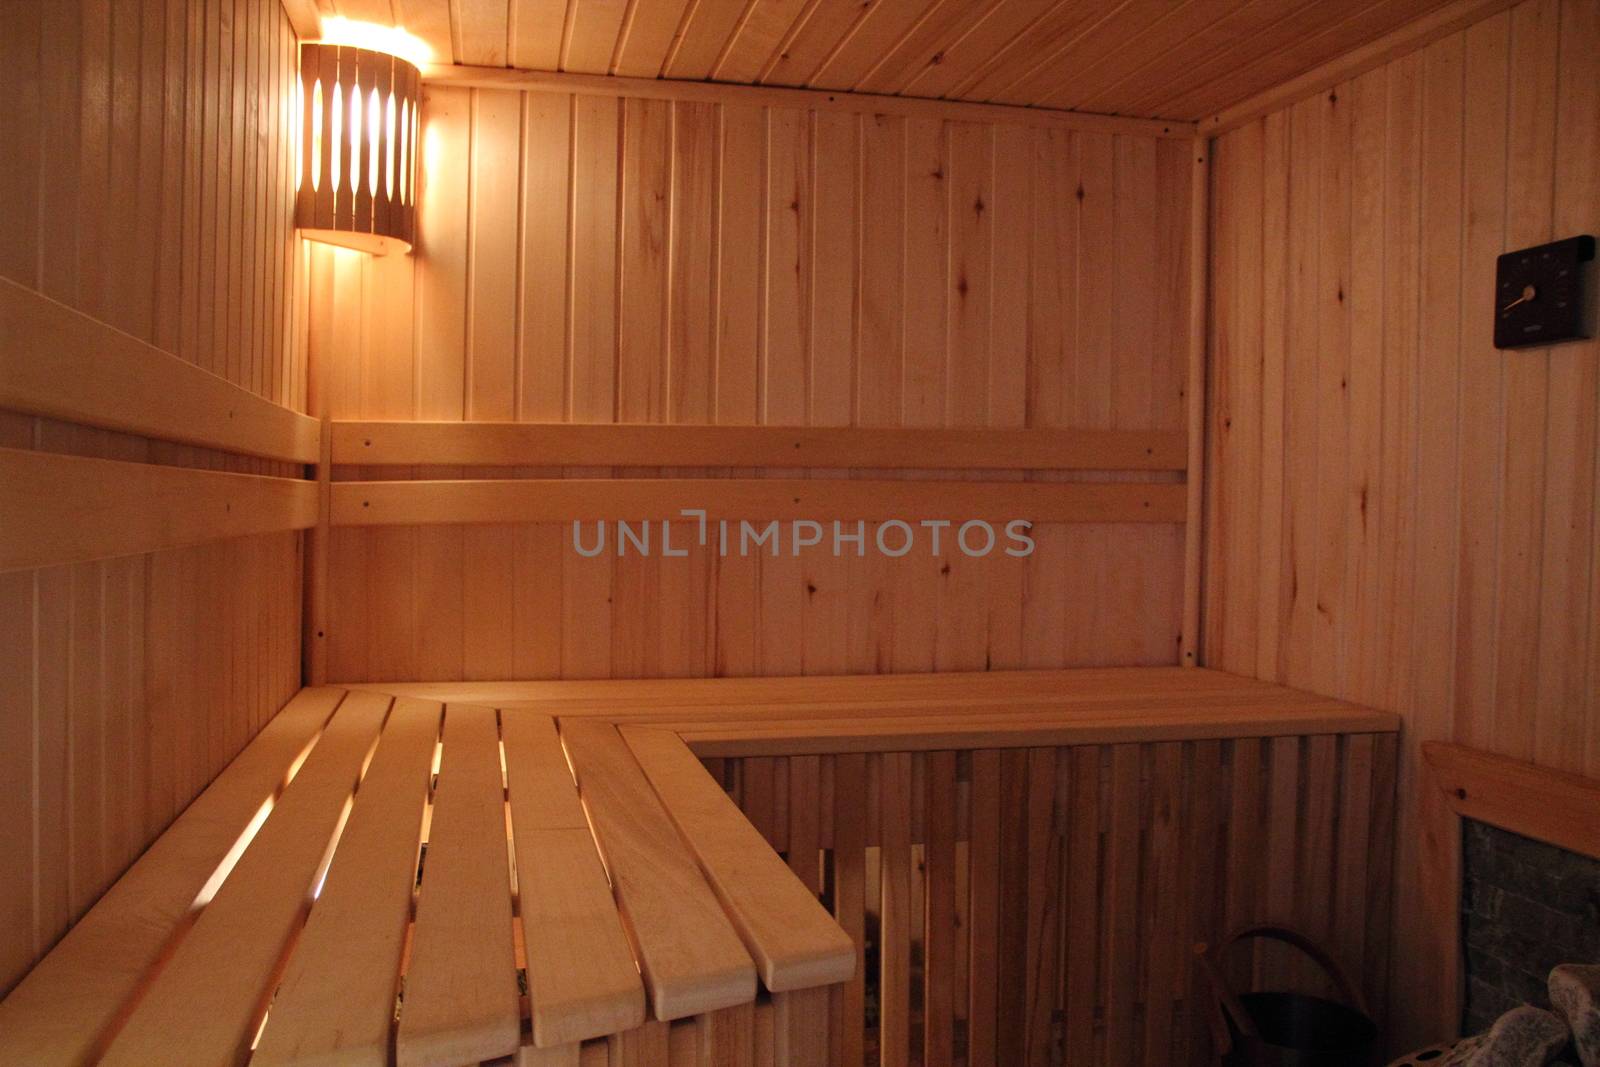 Seats in the sauna